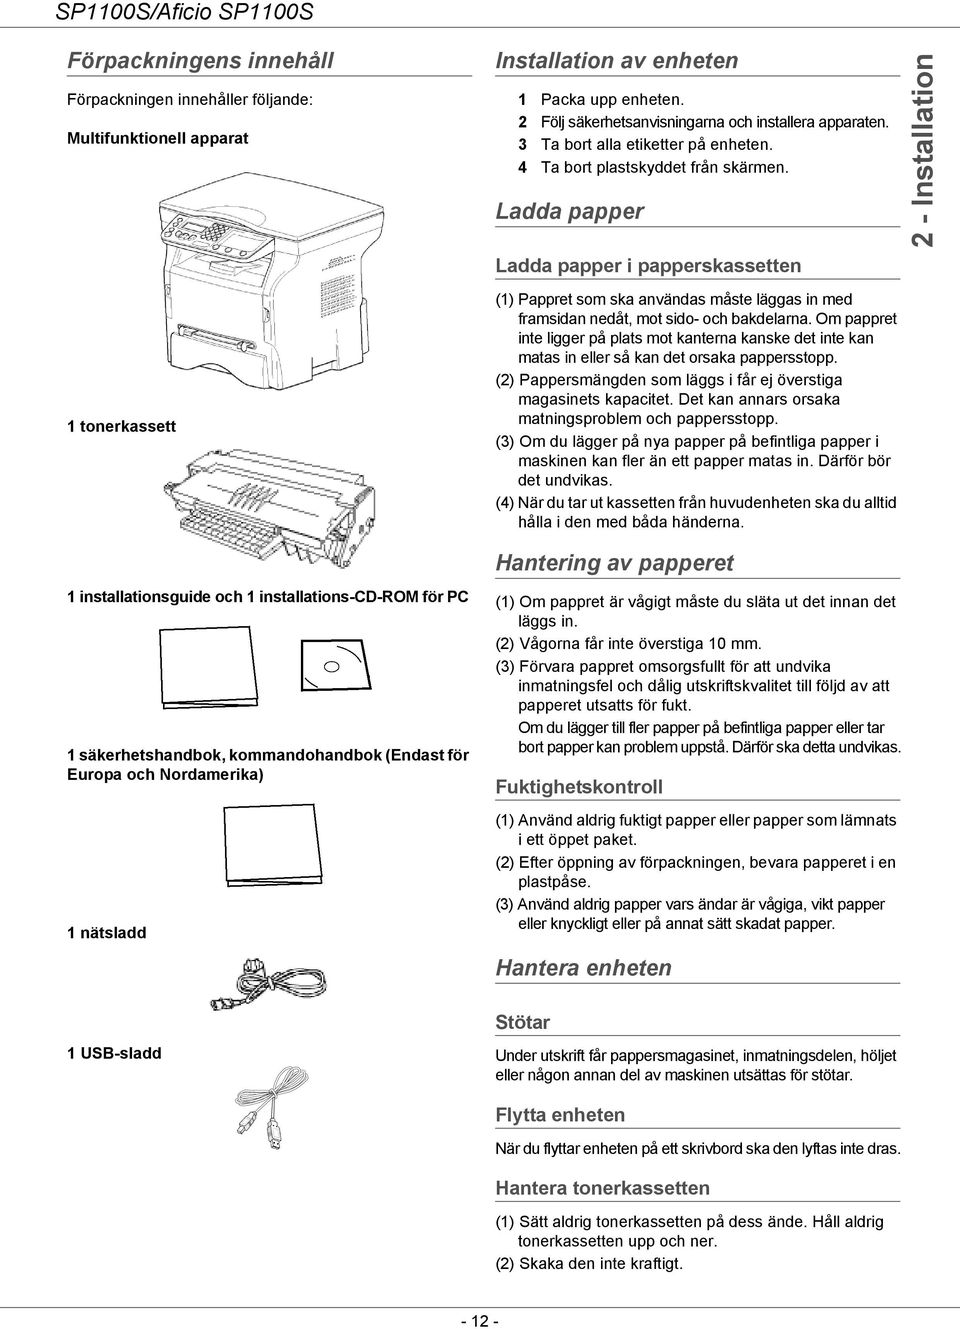 Ladda papper Ladda papper i papperskassetten 2 - Installation 1 tonerkassett 1 installationsguide och 1 installations-cd-rom för PC 1 säkerhetshandbok, kommandohandbok (Endast för Europa och